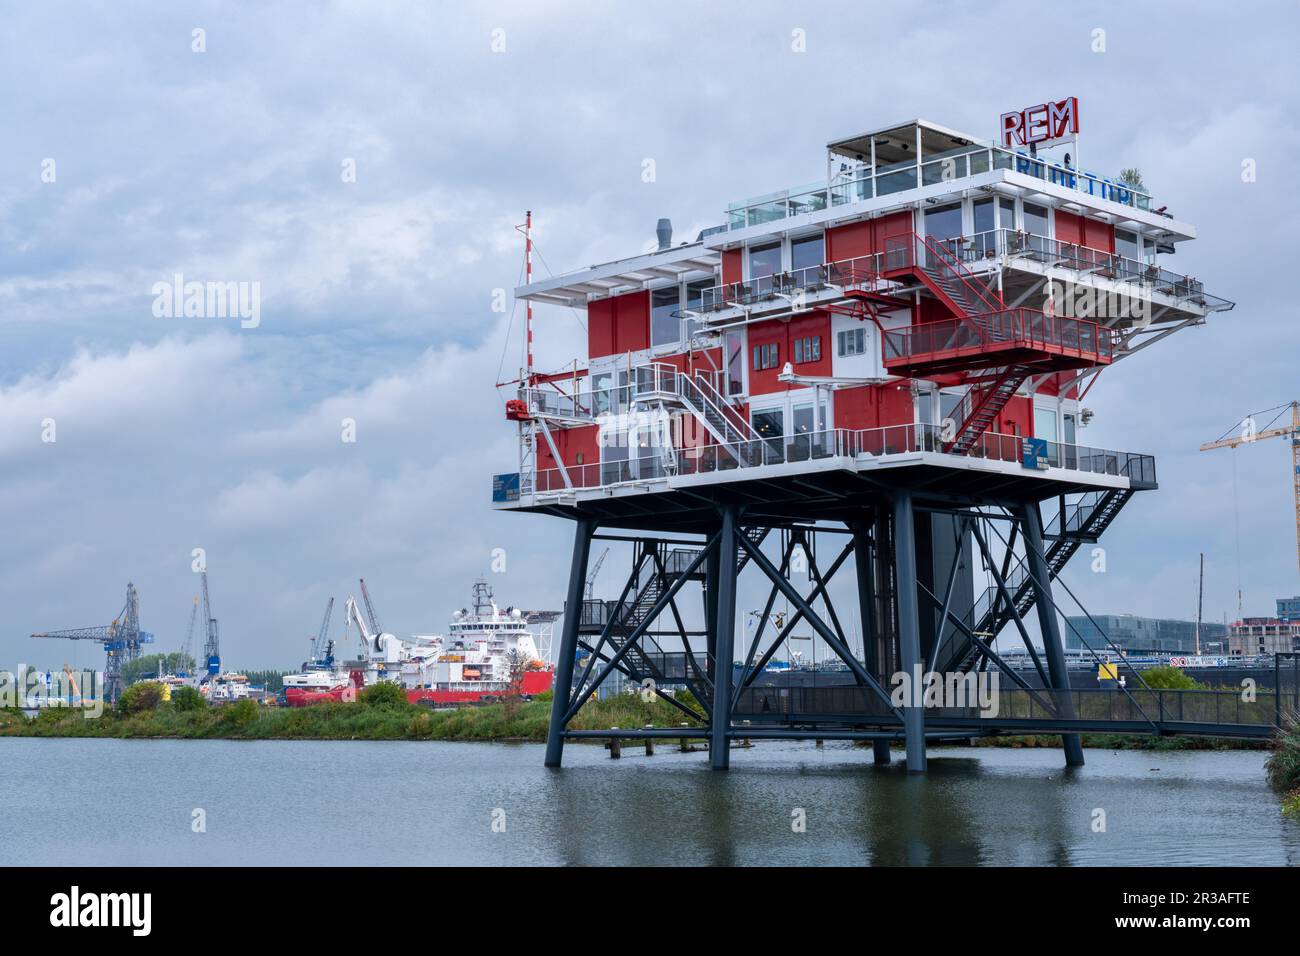 Amsterdam, Niederlande - 8. September 2022: Das REM Amsterdam ist ein Restaurant, das auf einer alten Plattform an der Nordsee errichtet wurde Stockfoto